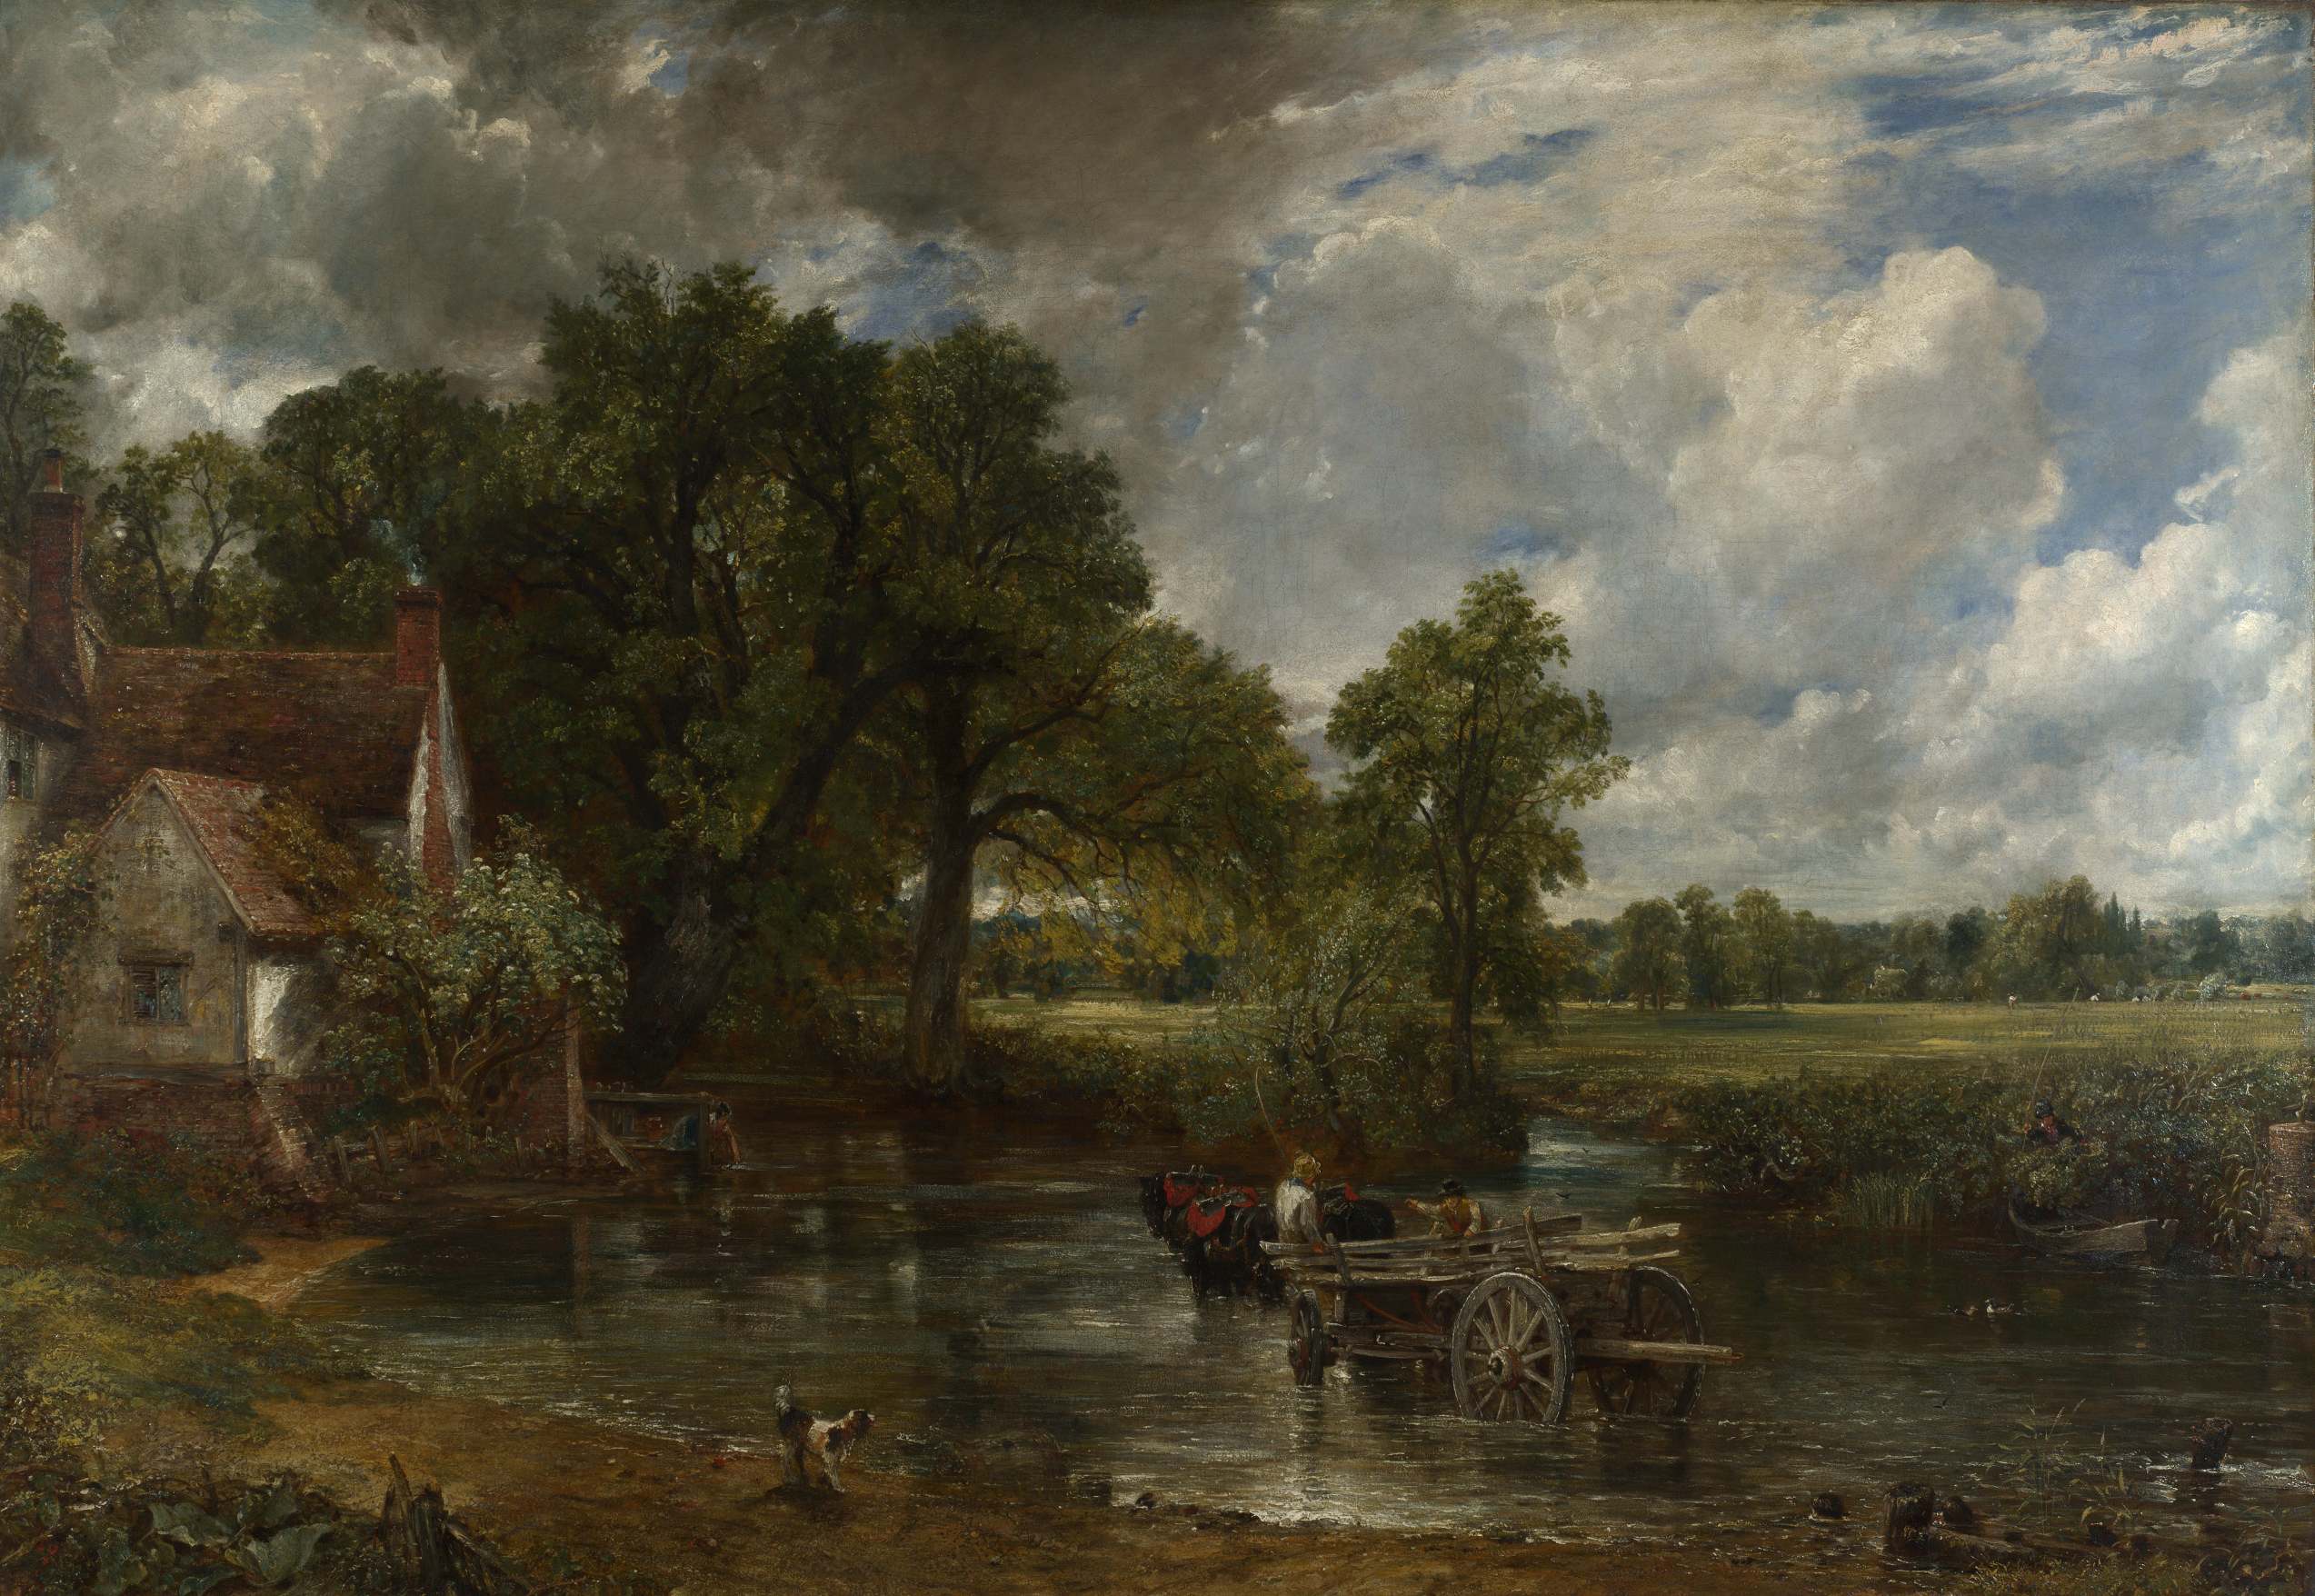 The Hay Wain - John Constable